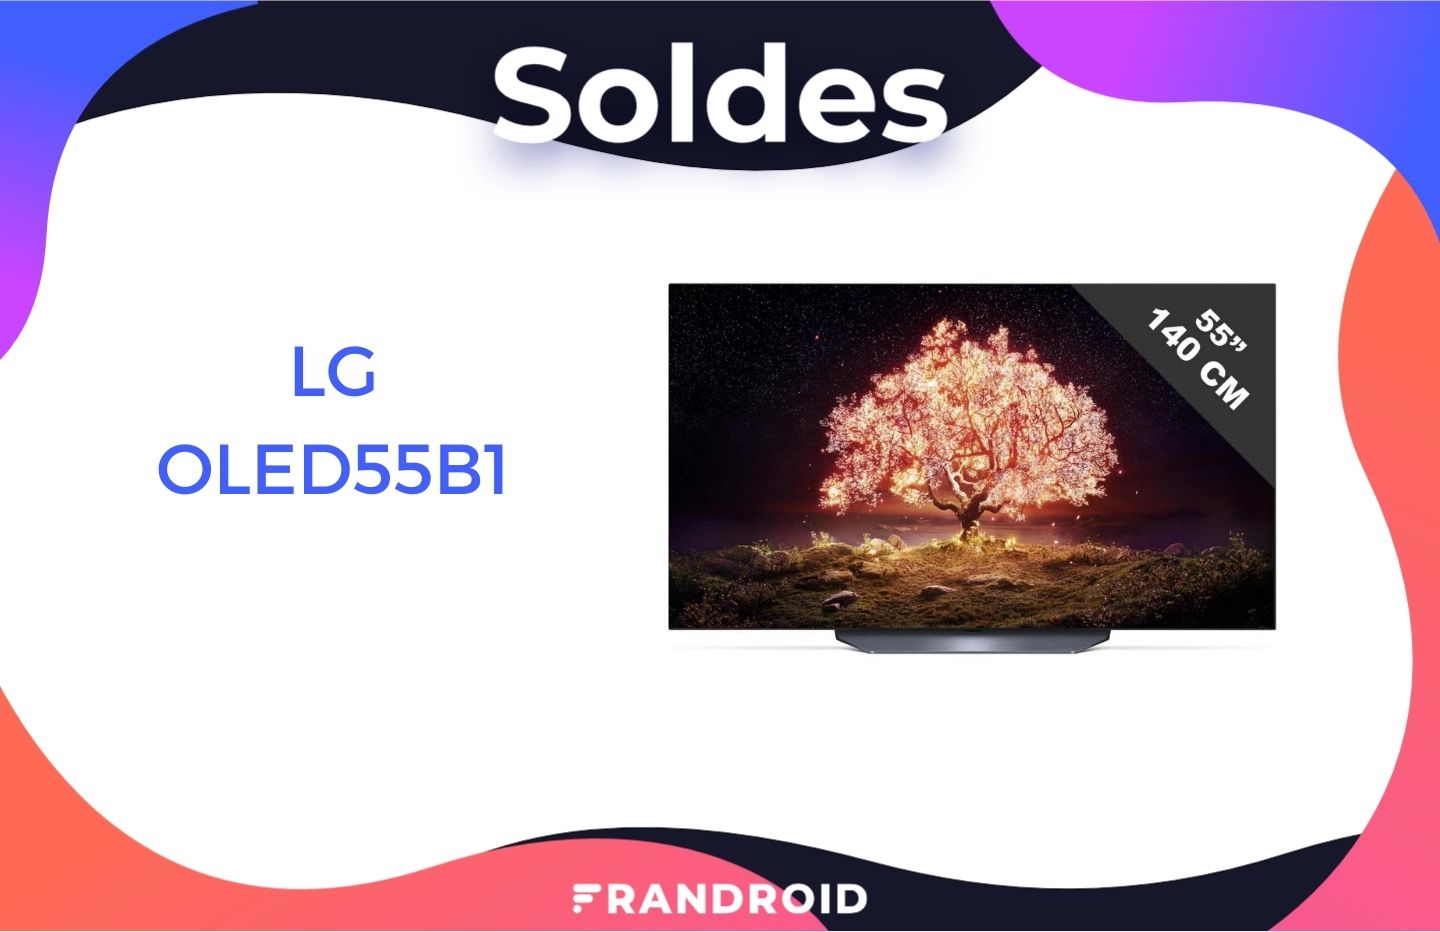 Téléviseur LG TV OLED 4K smart 55 pouces 55B1